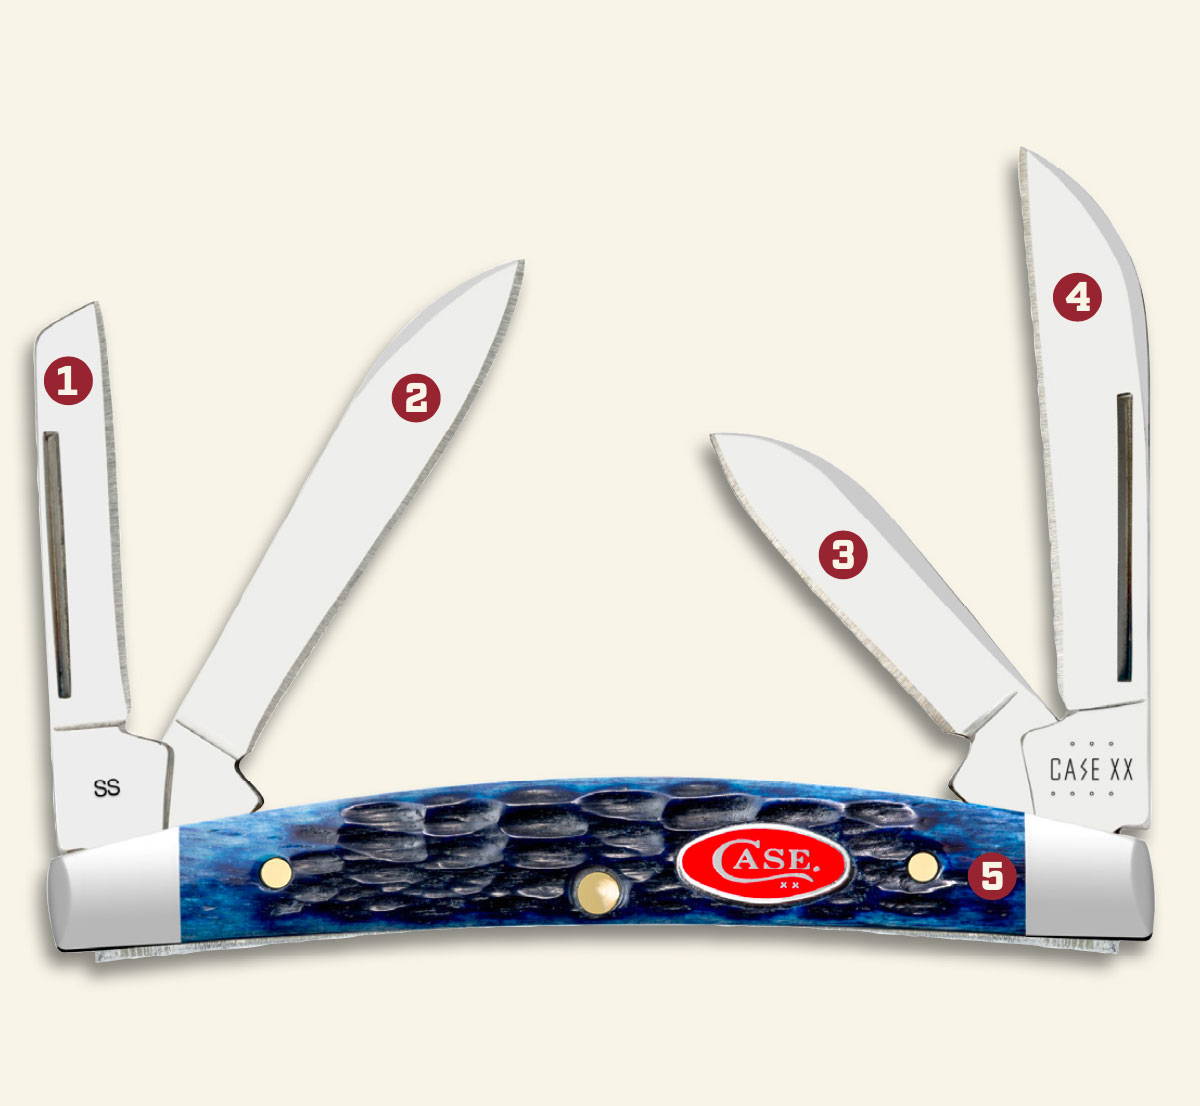 Case XX Knives by Pattern -Kitchen Cutlery